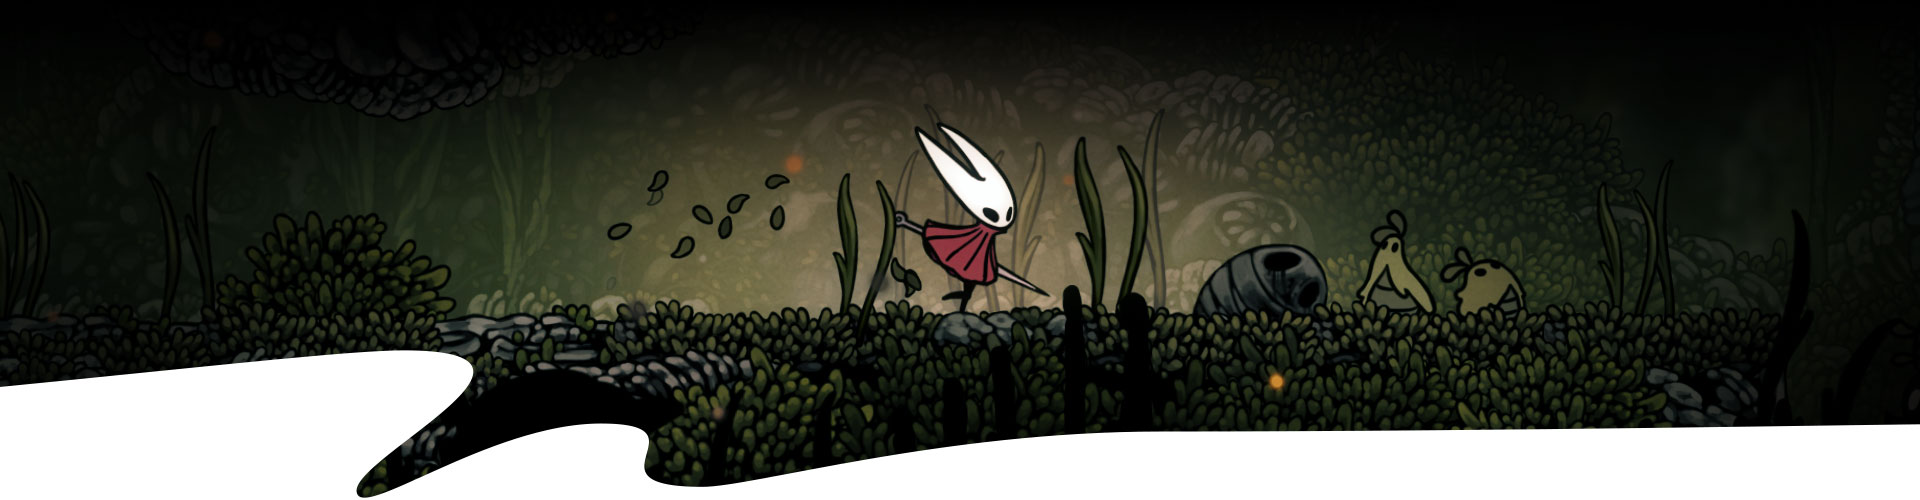 Un personnage traverse une forêt venteuse. 